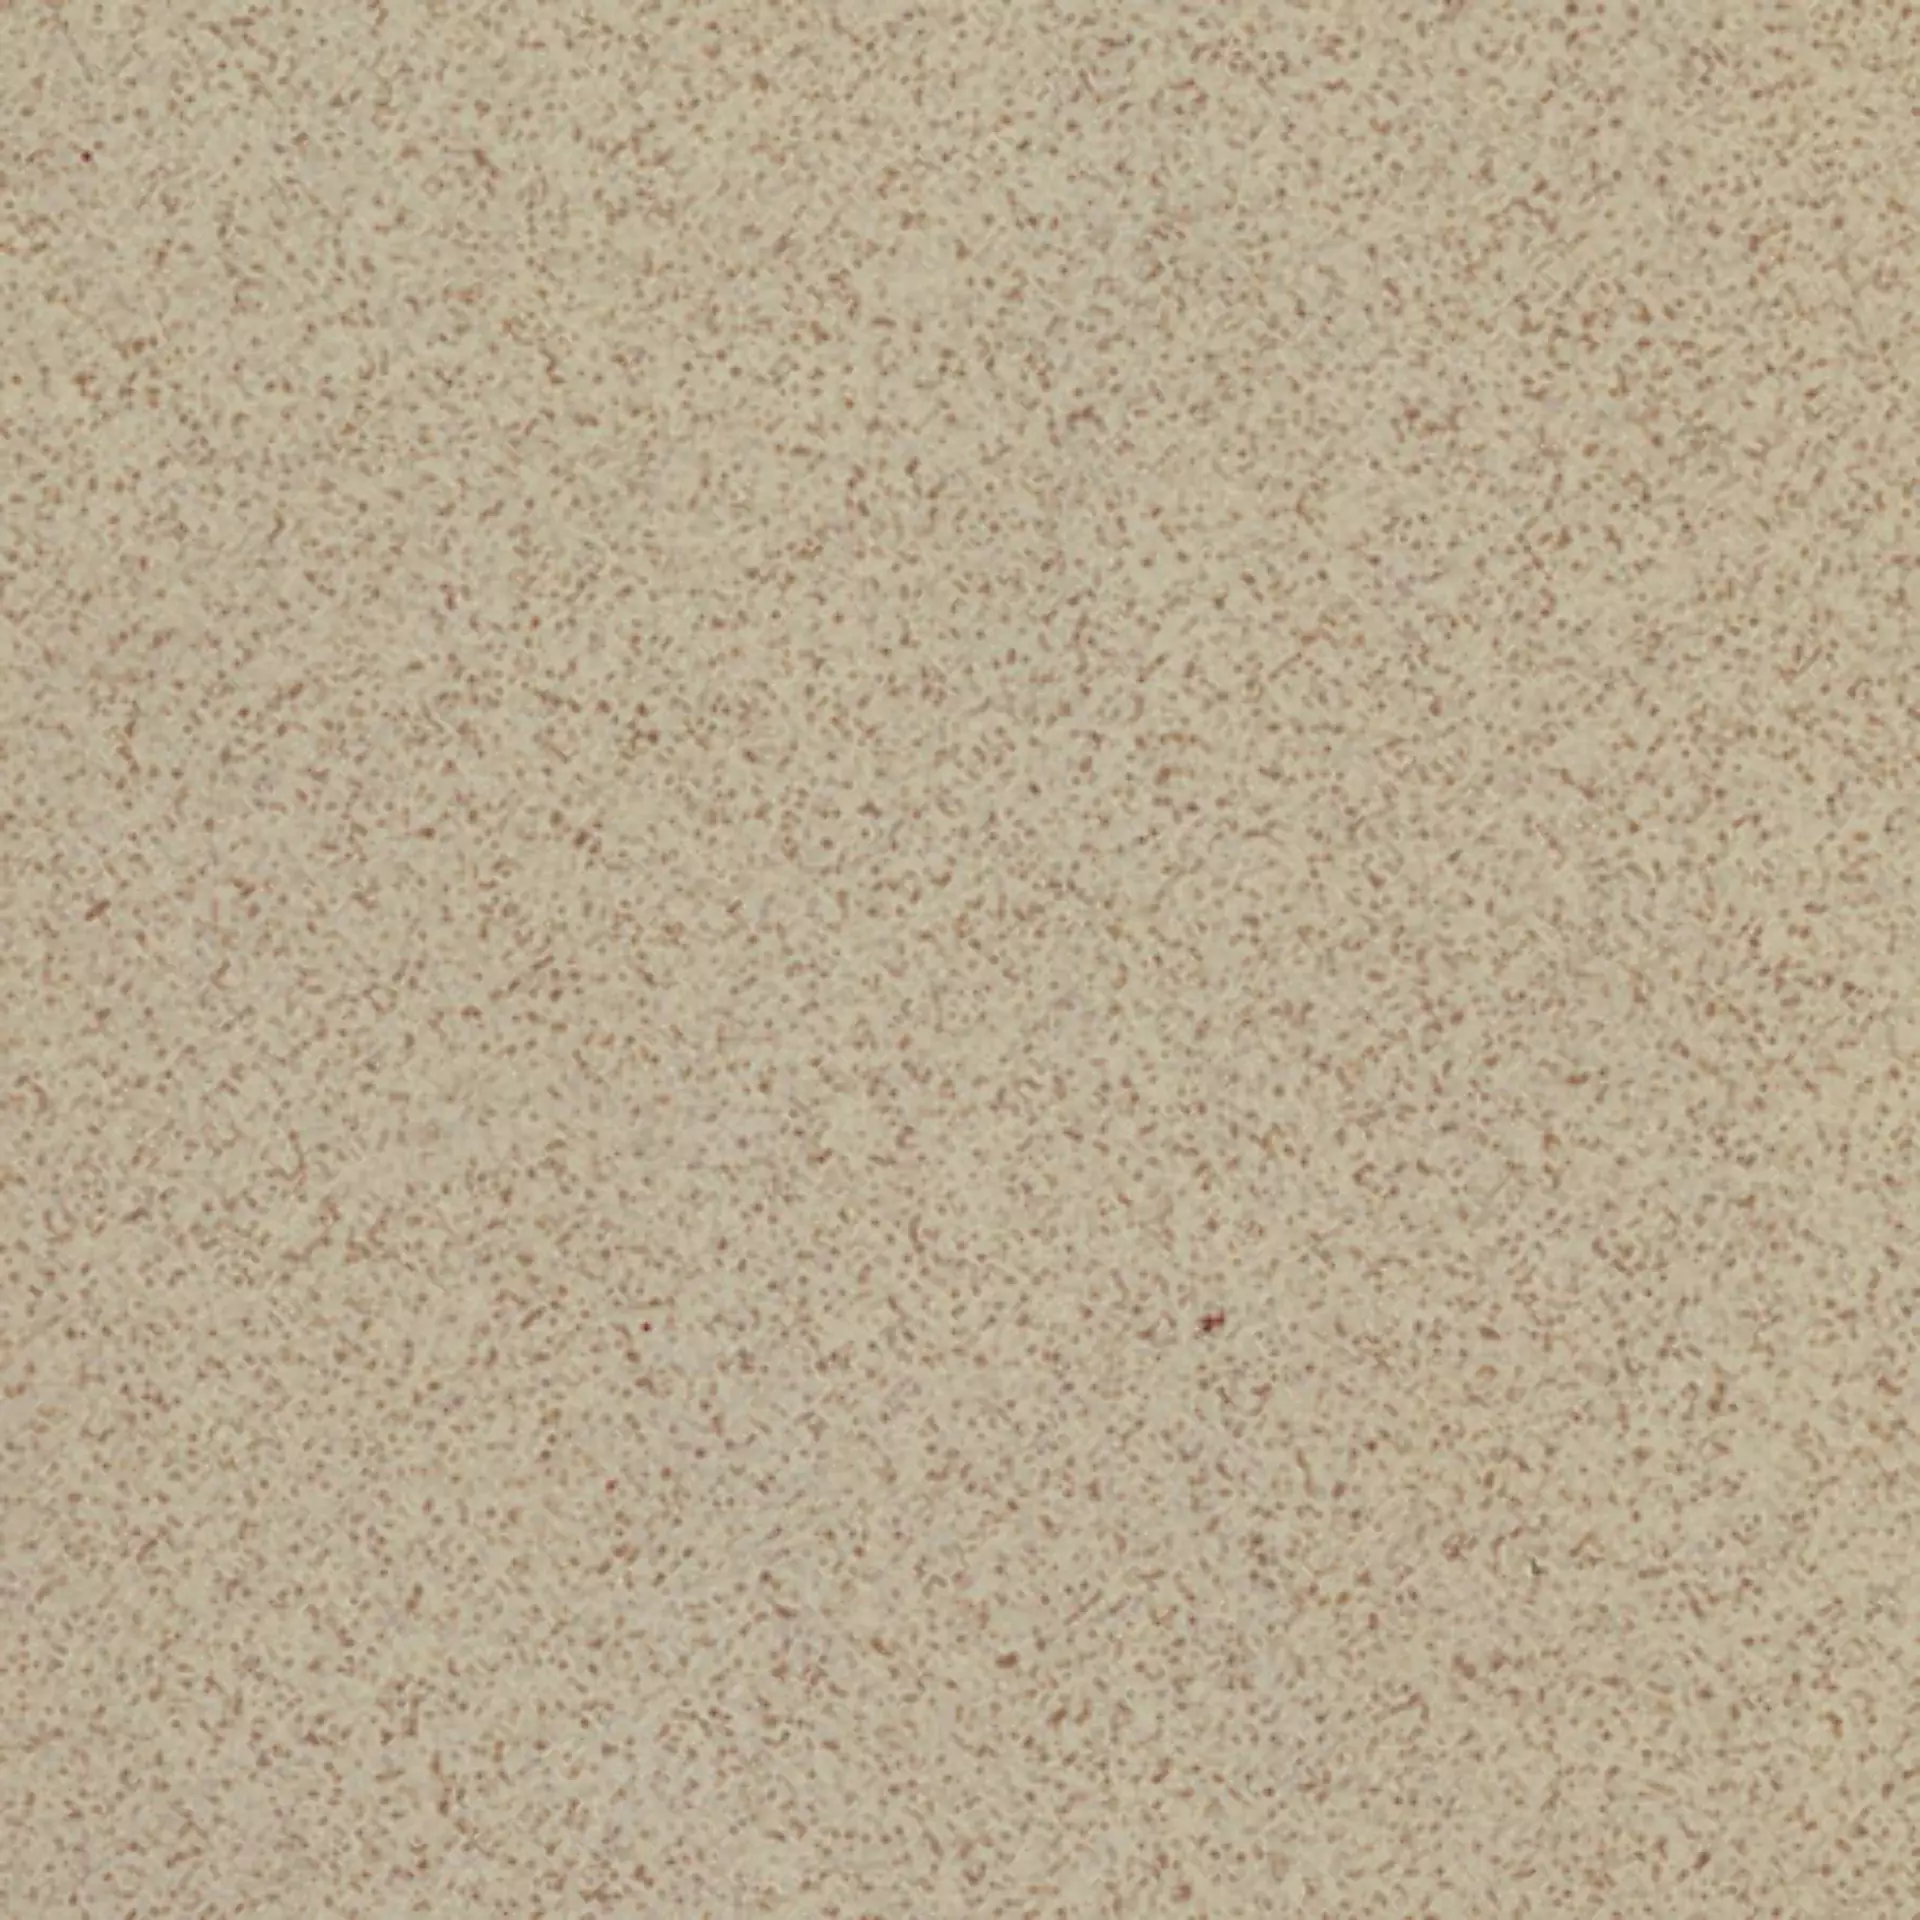 Casalgrande Granito 1 Sahara Naturale – Matt Sahara 700122 natur matt 30x30cm 8mm